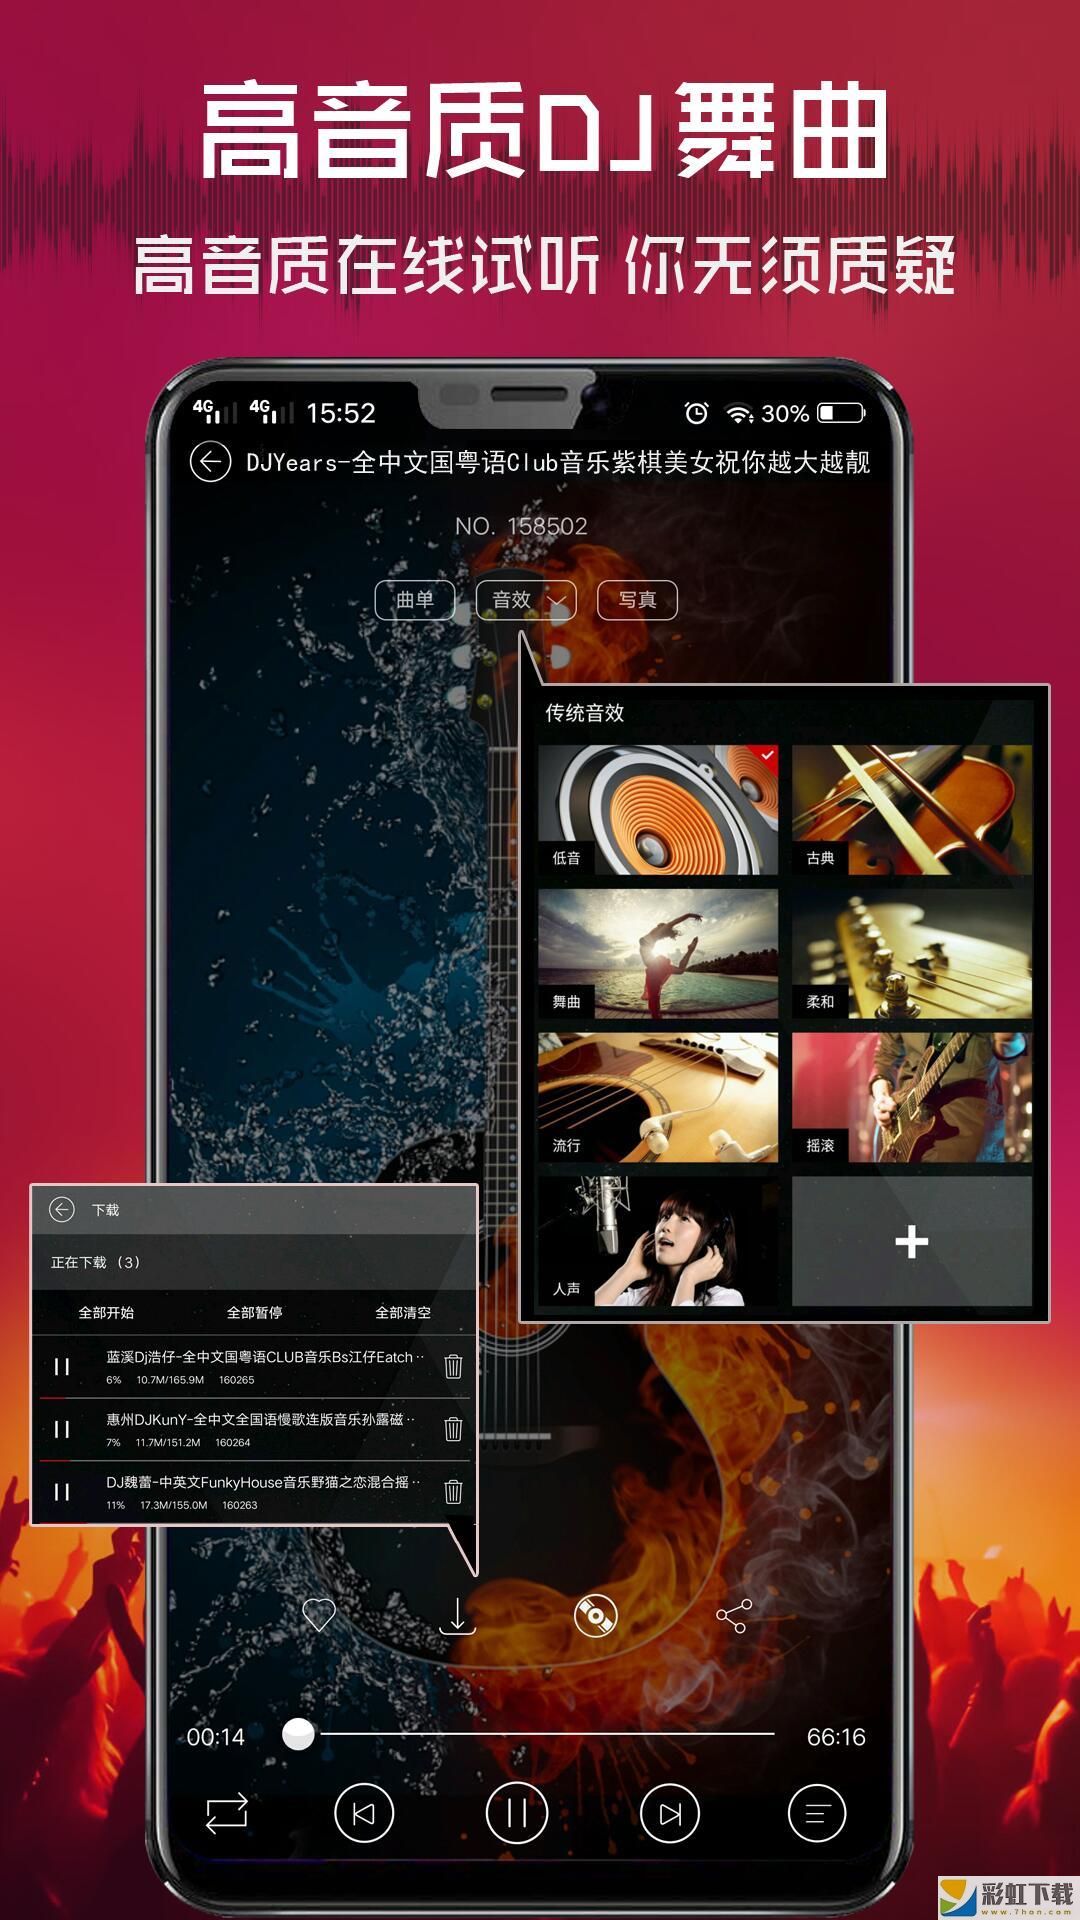 清风dj音乐网最新正式版v2.4.5苹果预约